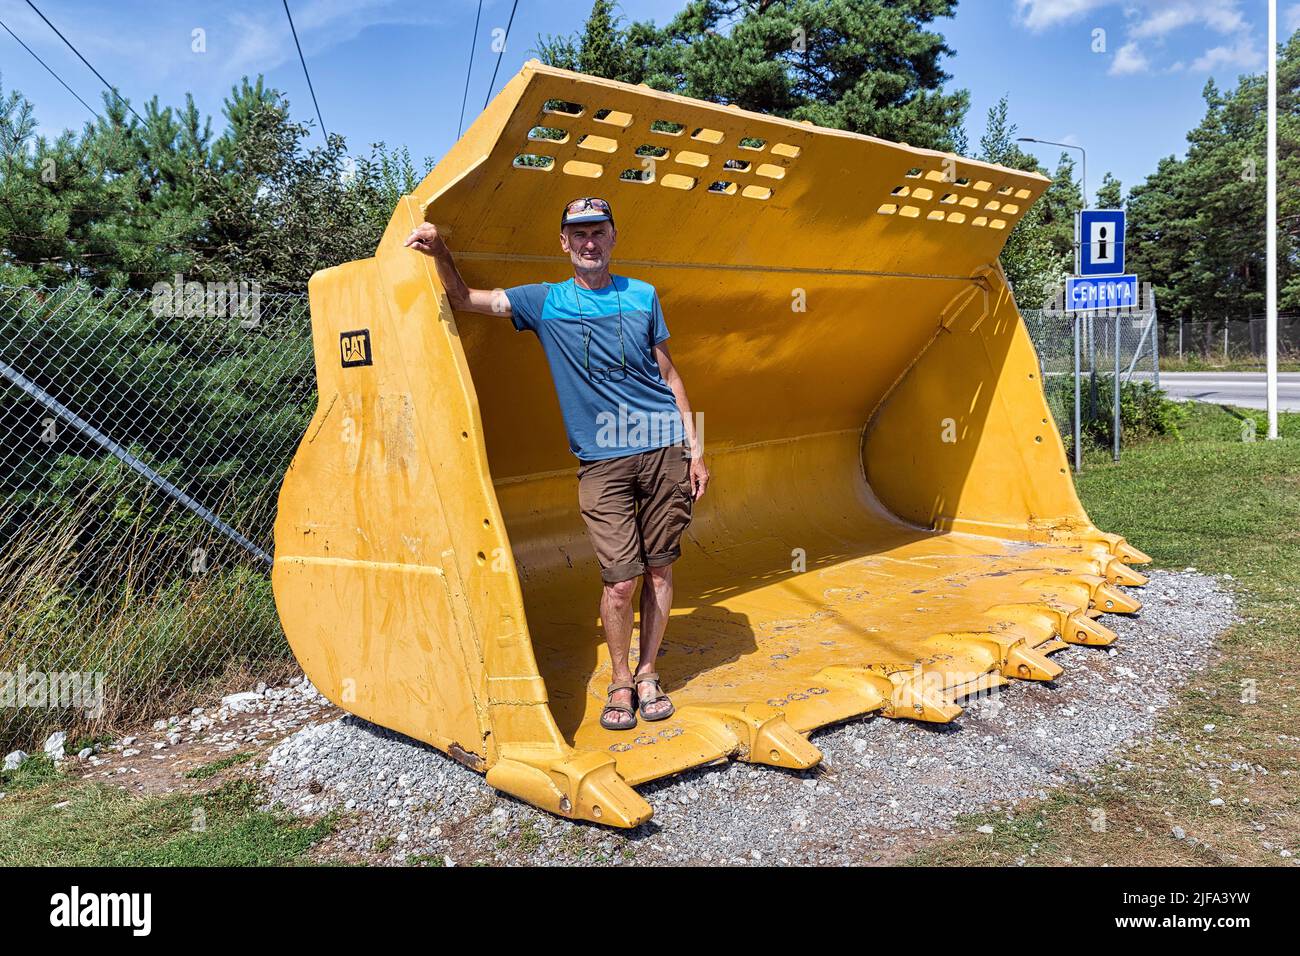 Tourisme debout dans une pelle de chargeuse sur pneus, pelle, Cementa cimenterie, SLite, Gotland Island, Suède Banque D'Images